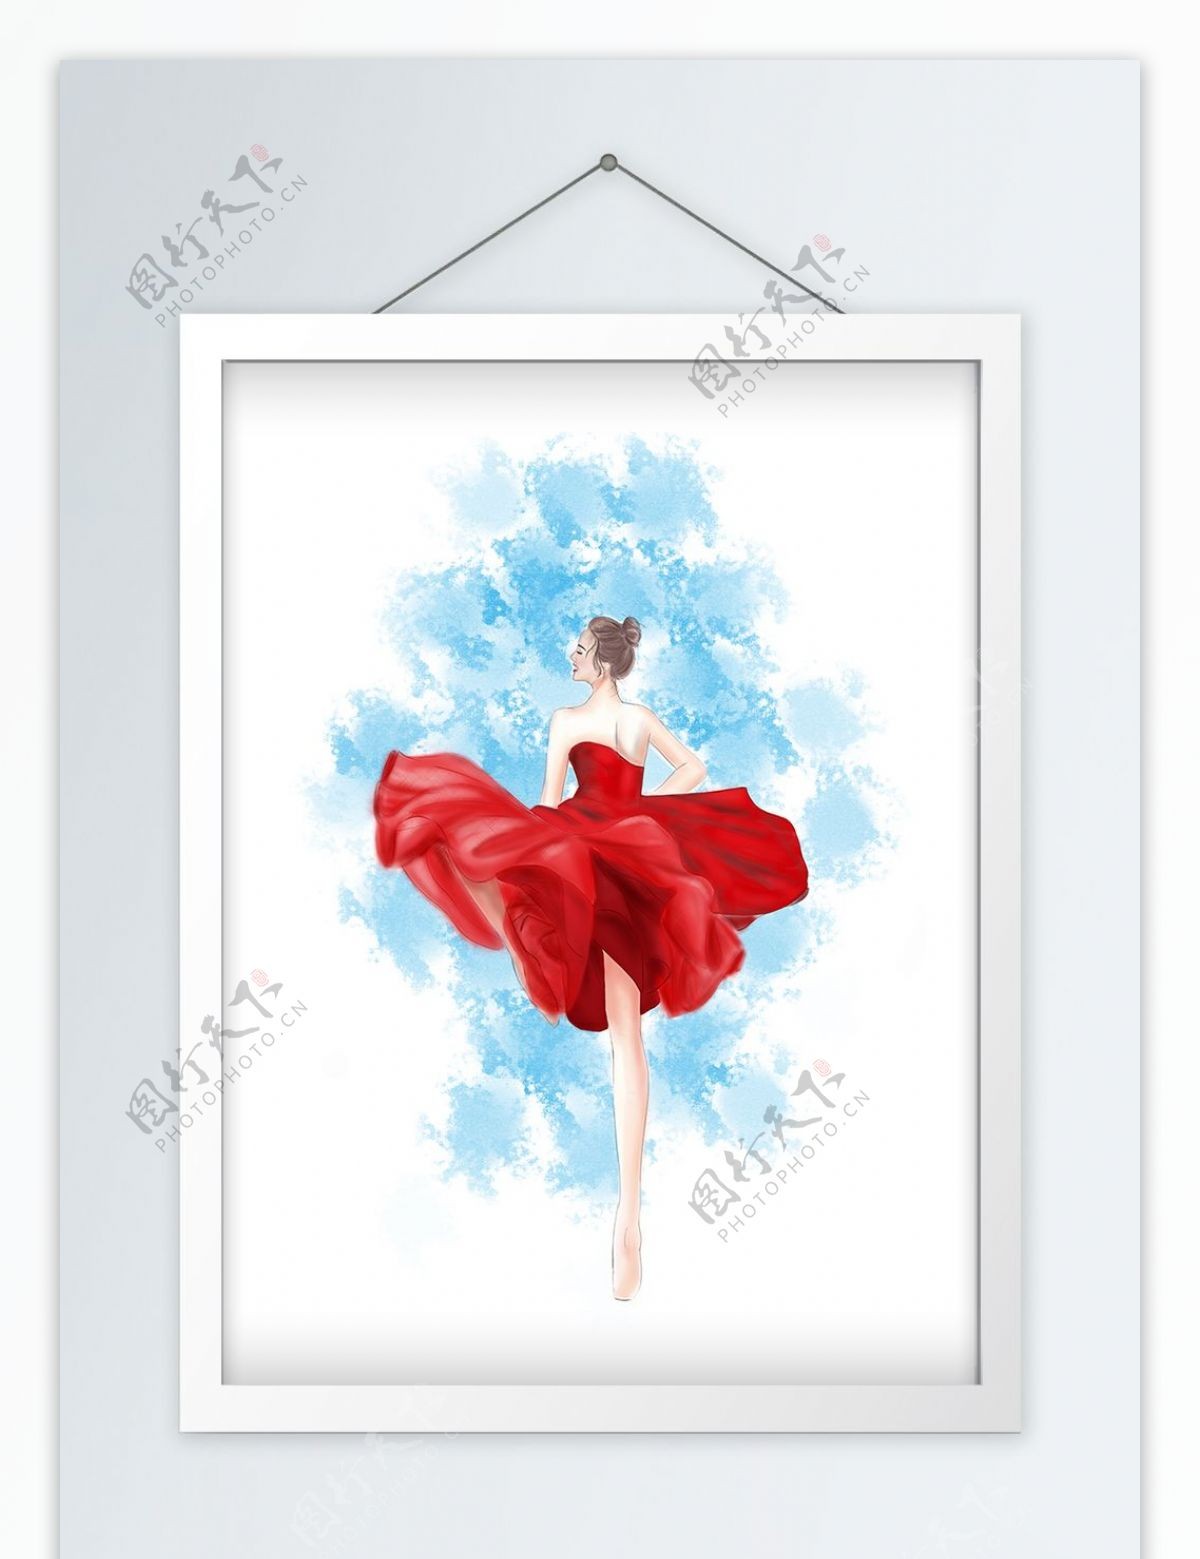 原创手绘起风飞舞的红裙芭蕾舞女孩